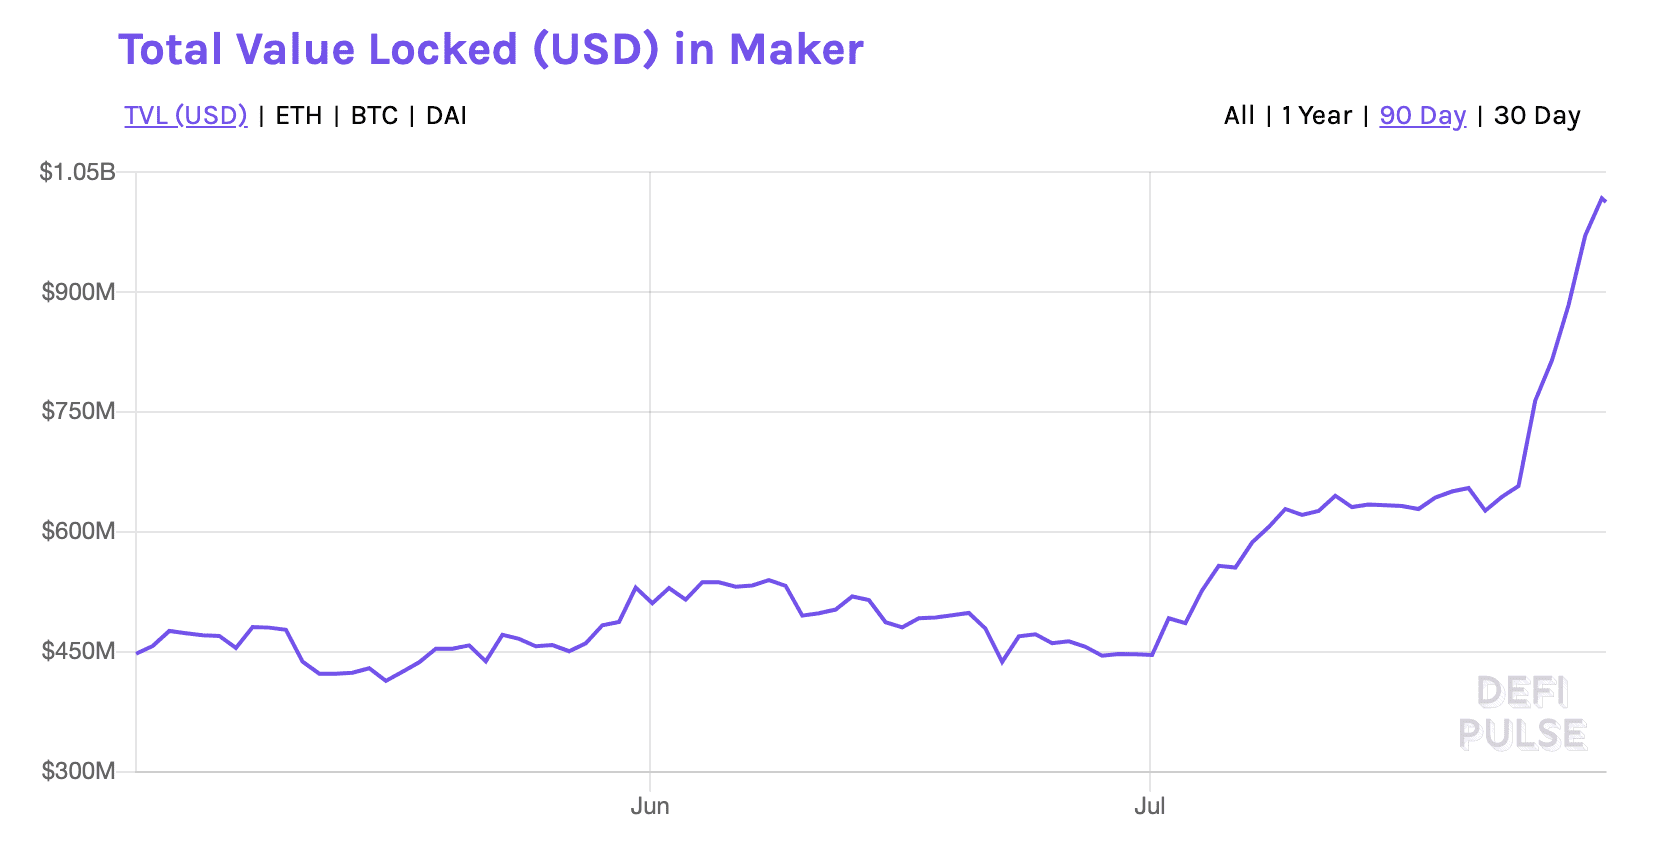 Ekran Resmi 2020 07 28 09.48.52 - MakerDAO Üzerindeki Kilitli Değer 1 Milyar $'a Ulaştı!